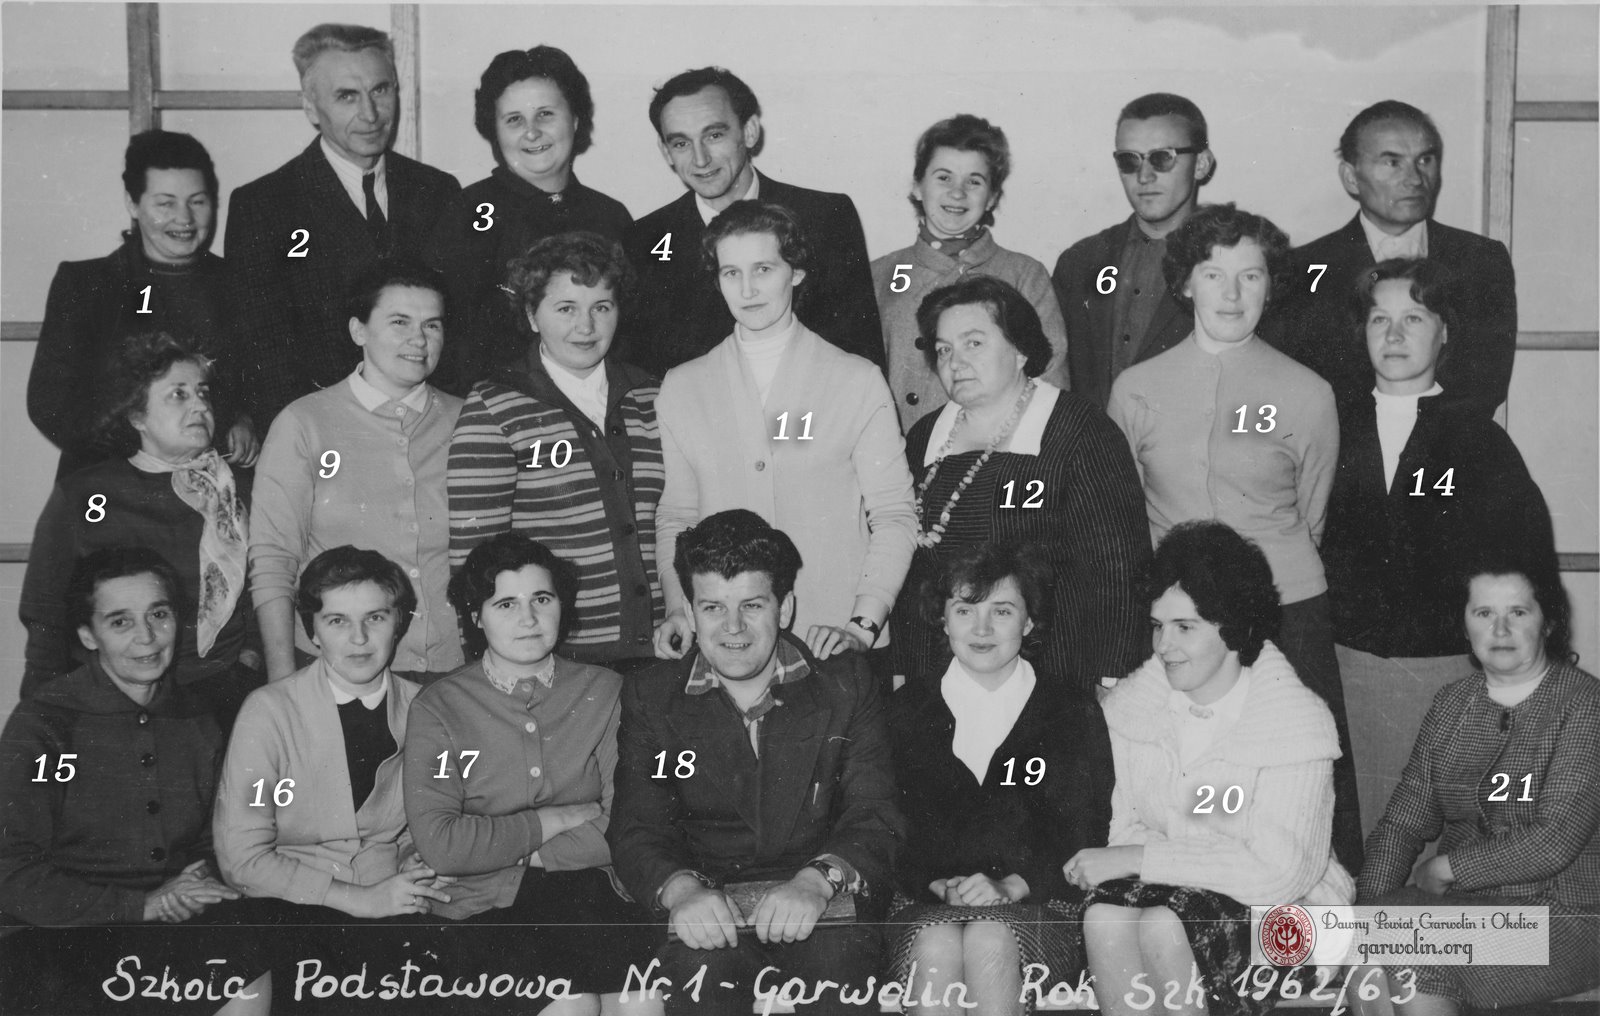 Szkoła Podstawowa nr 1 w Garwolinie - rok szkolny 1962/63